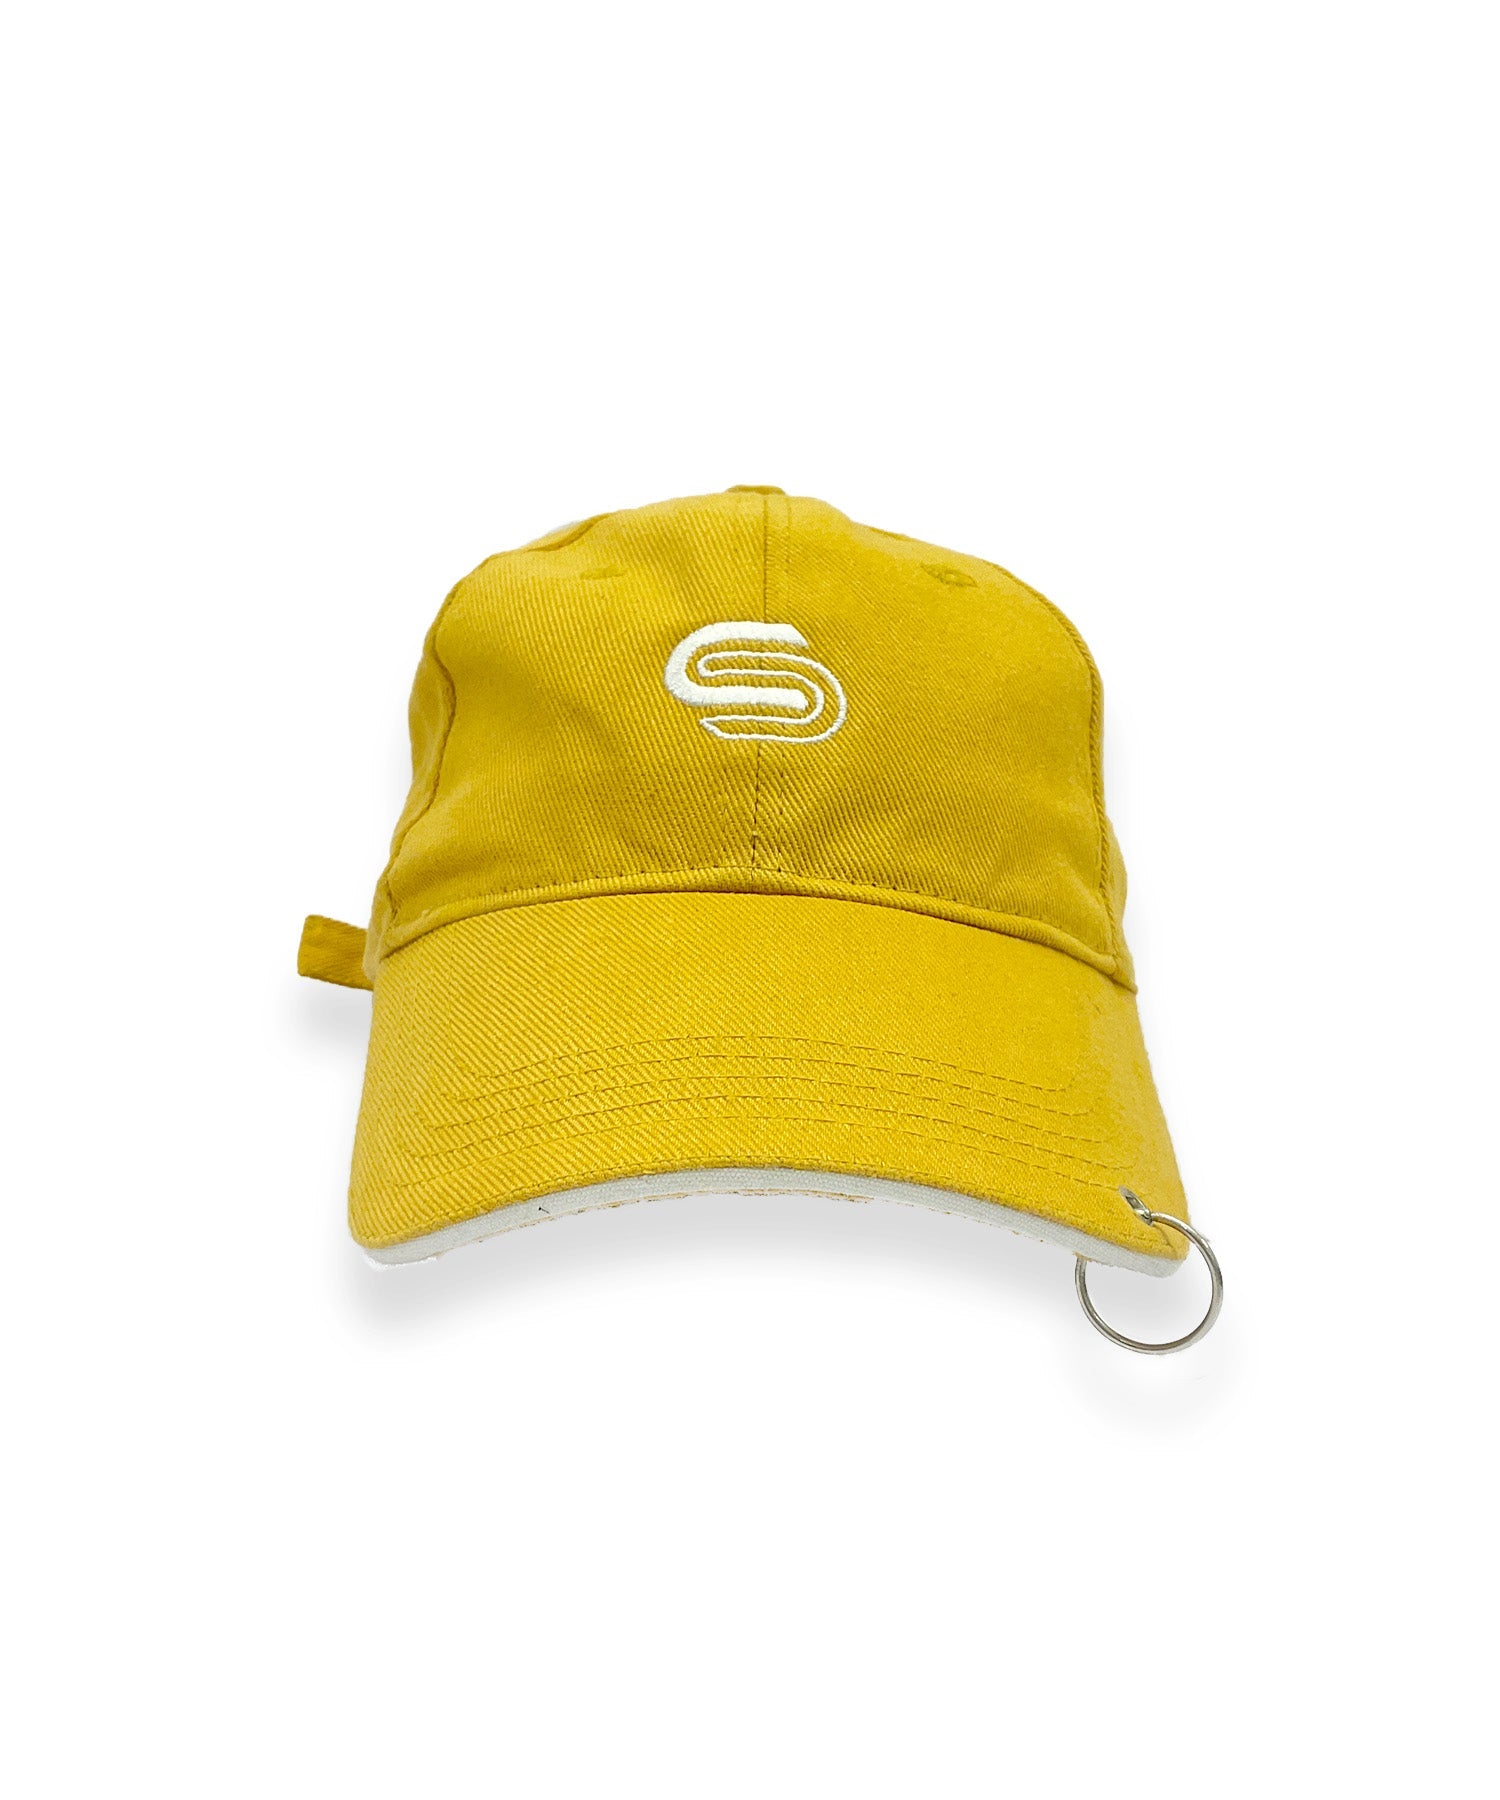 Power Cap - Hats